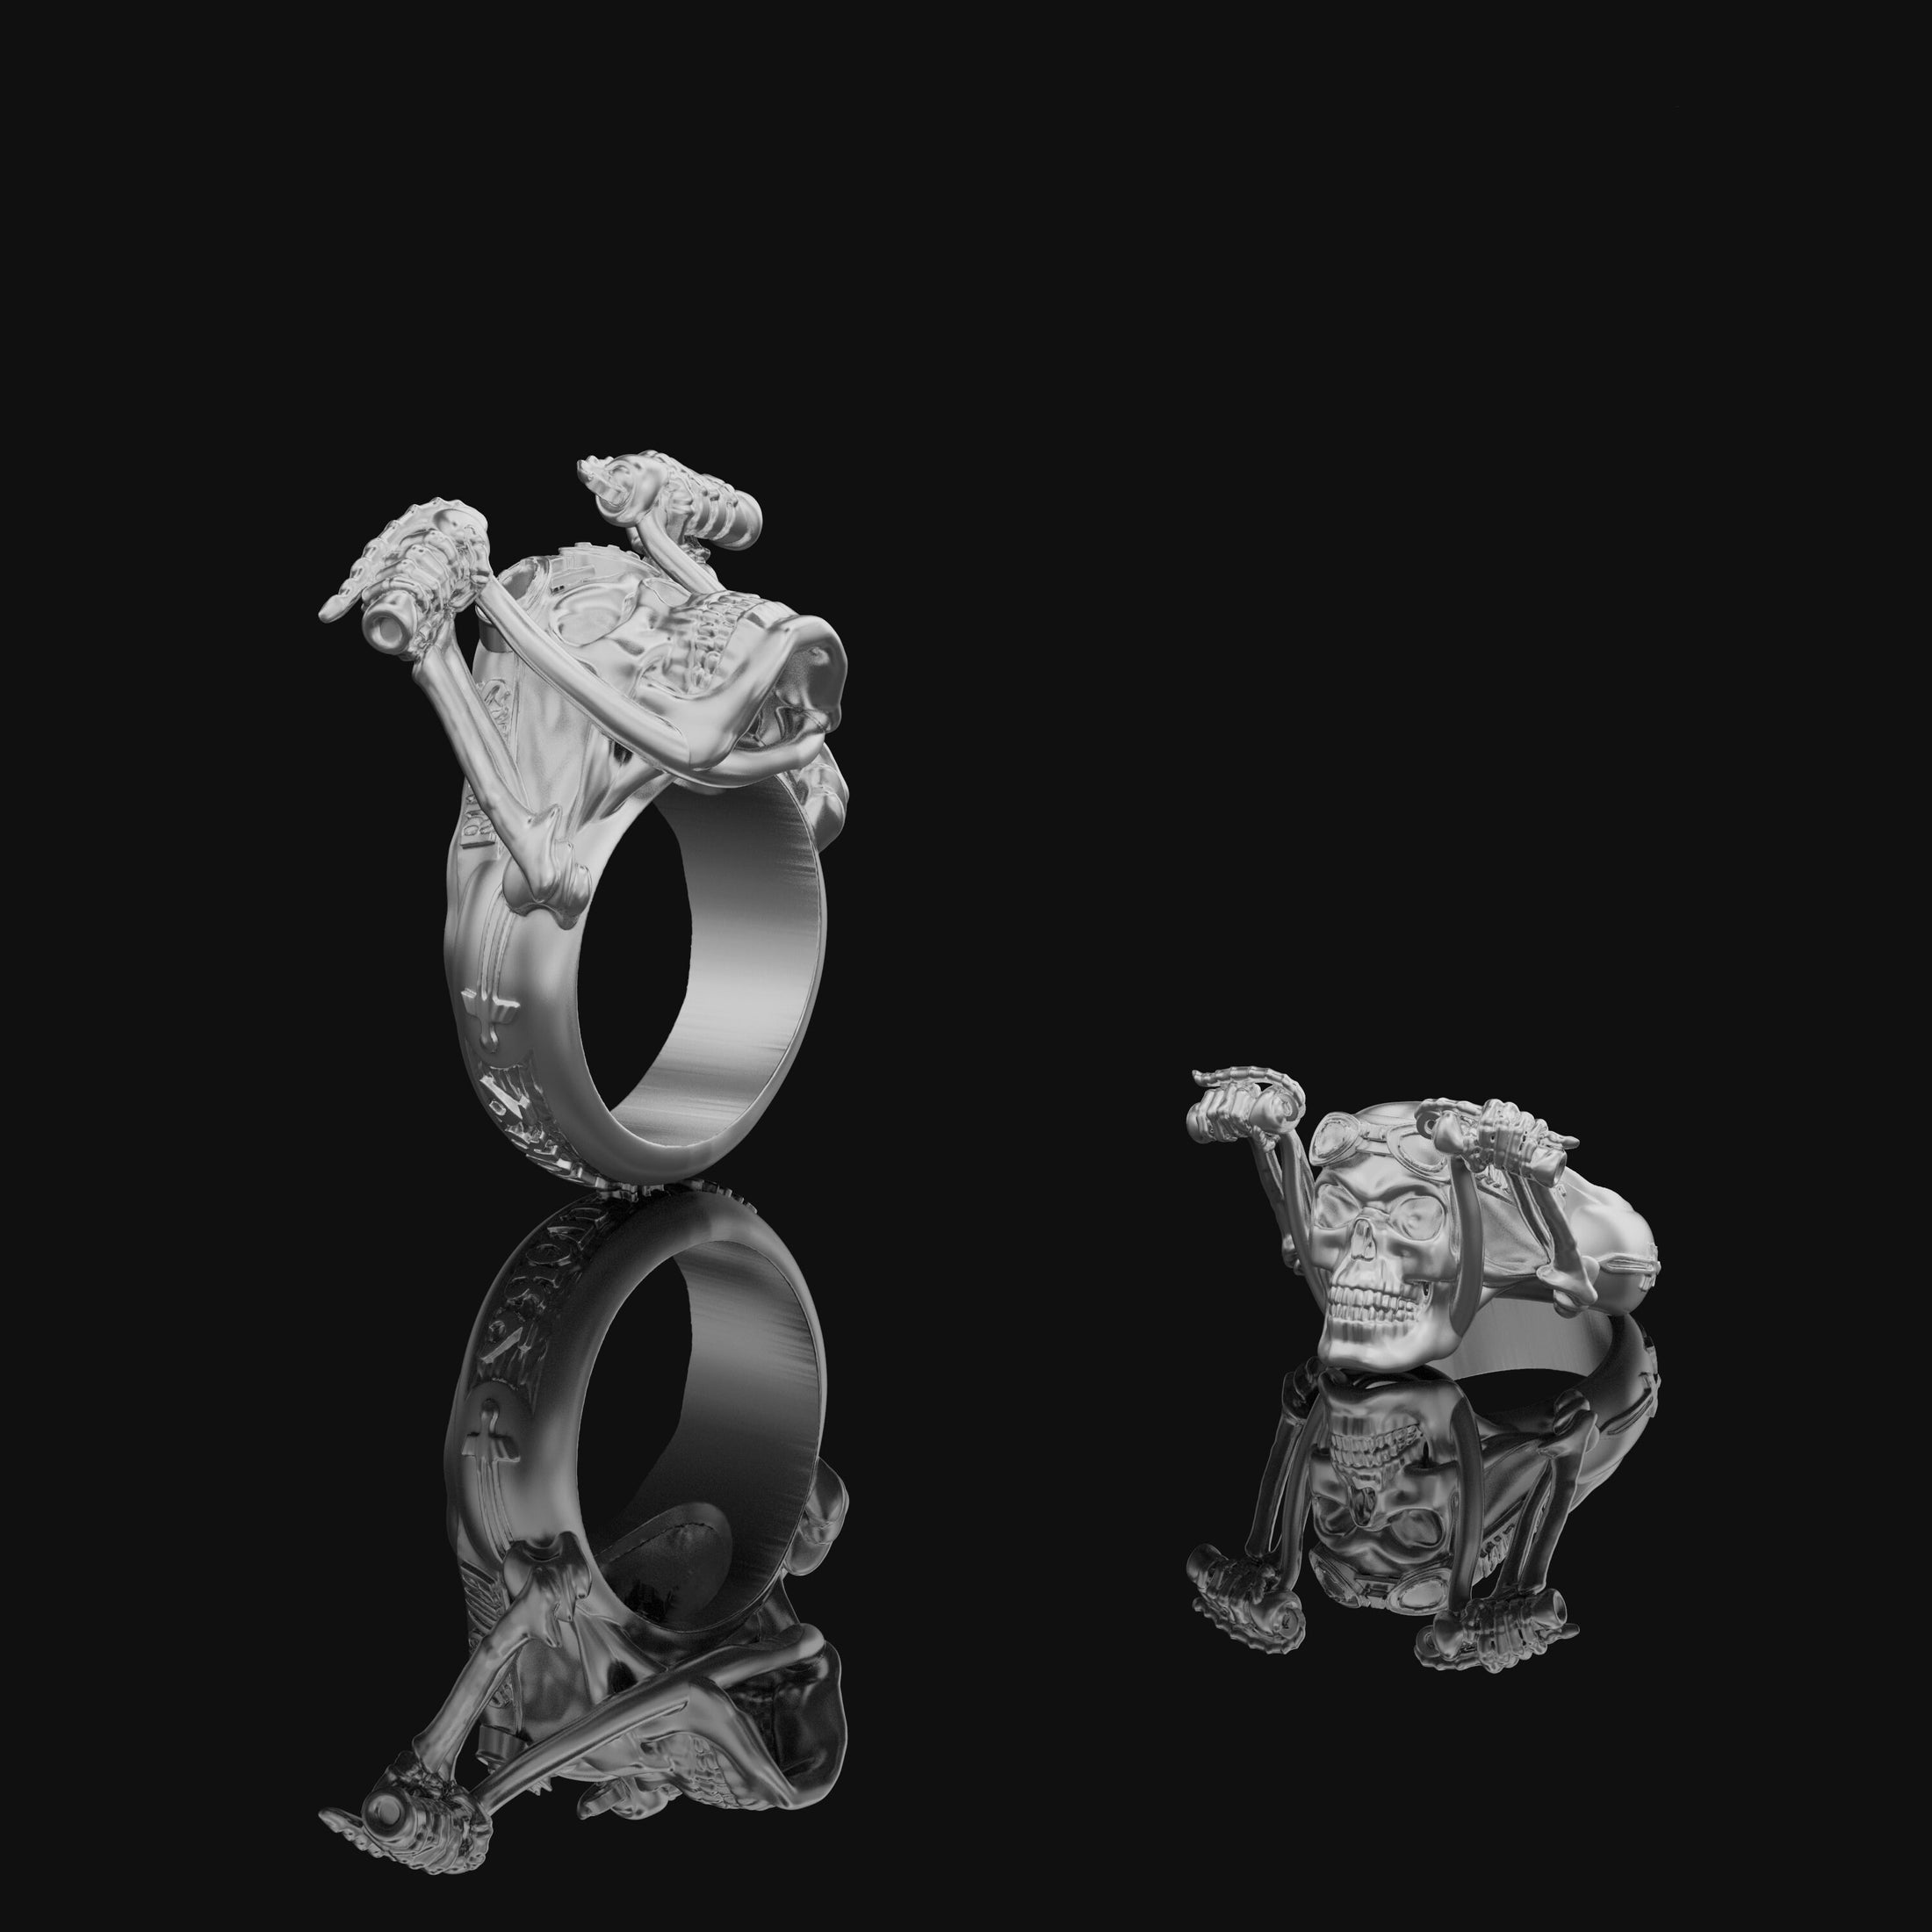 Skull Ring, Biker Ring, Gothic Ring, Skull Jewelry, Silver Skull Ring, Punk Ring, Gothic Skull, Gift For Him, Biker Skull Ring